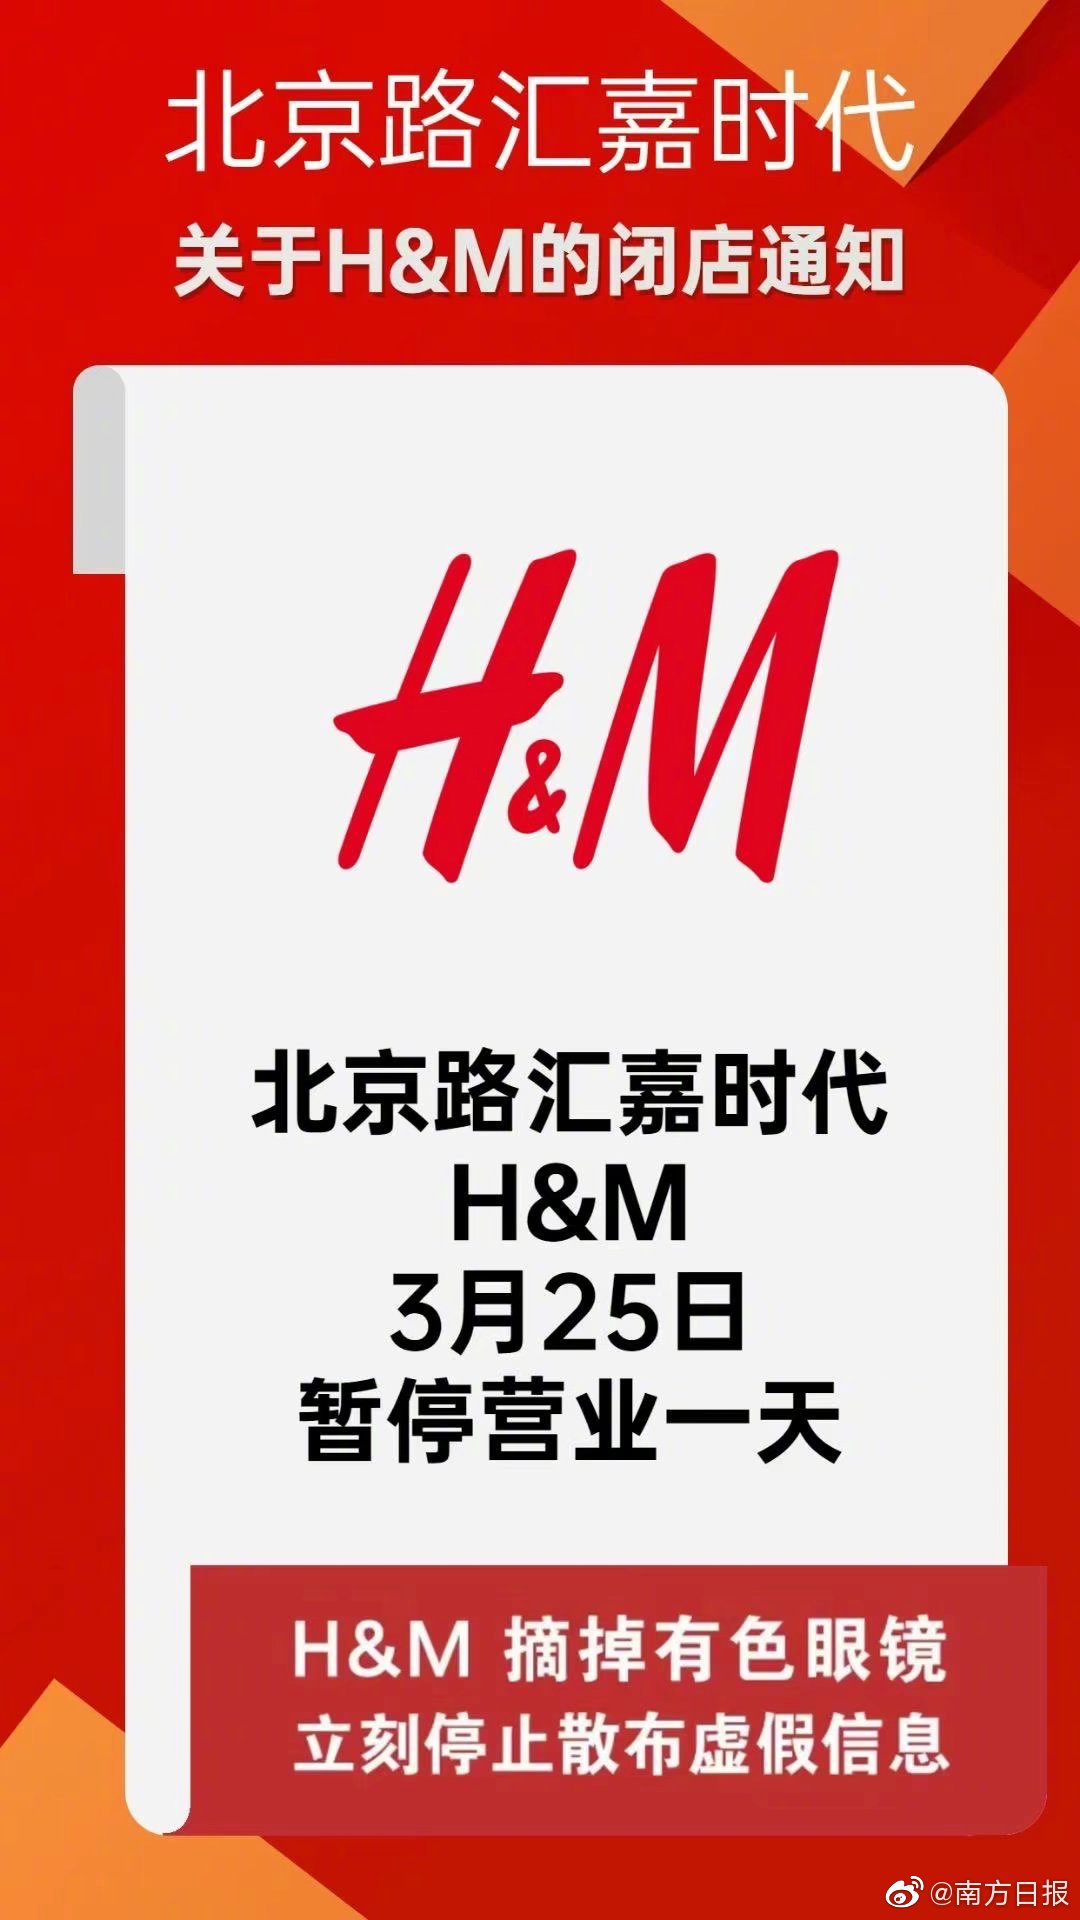 新疆一百货公司关闭H&M门店并要求道歉